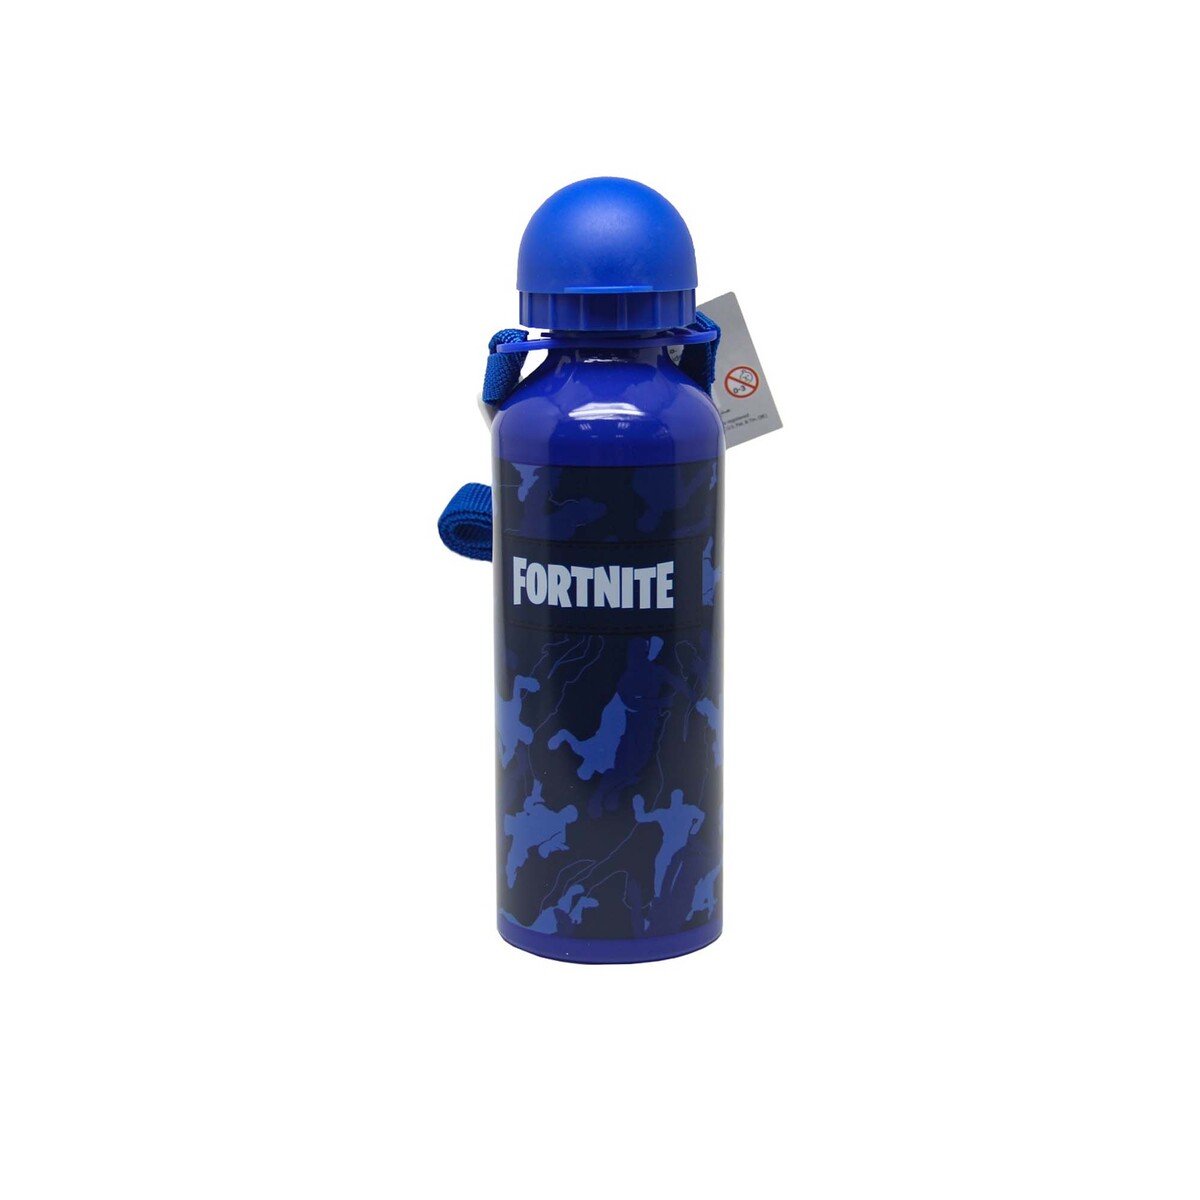 Fortnite School Metal Water Bottle 15-01102